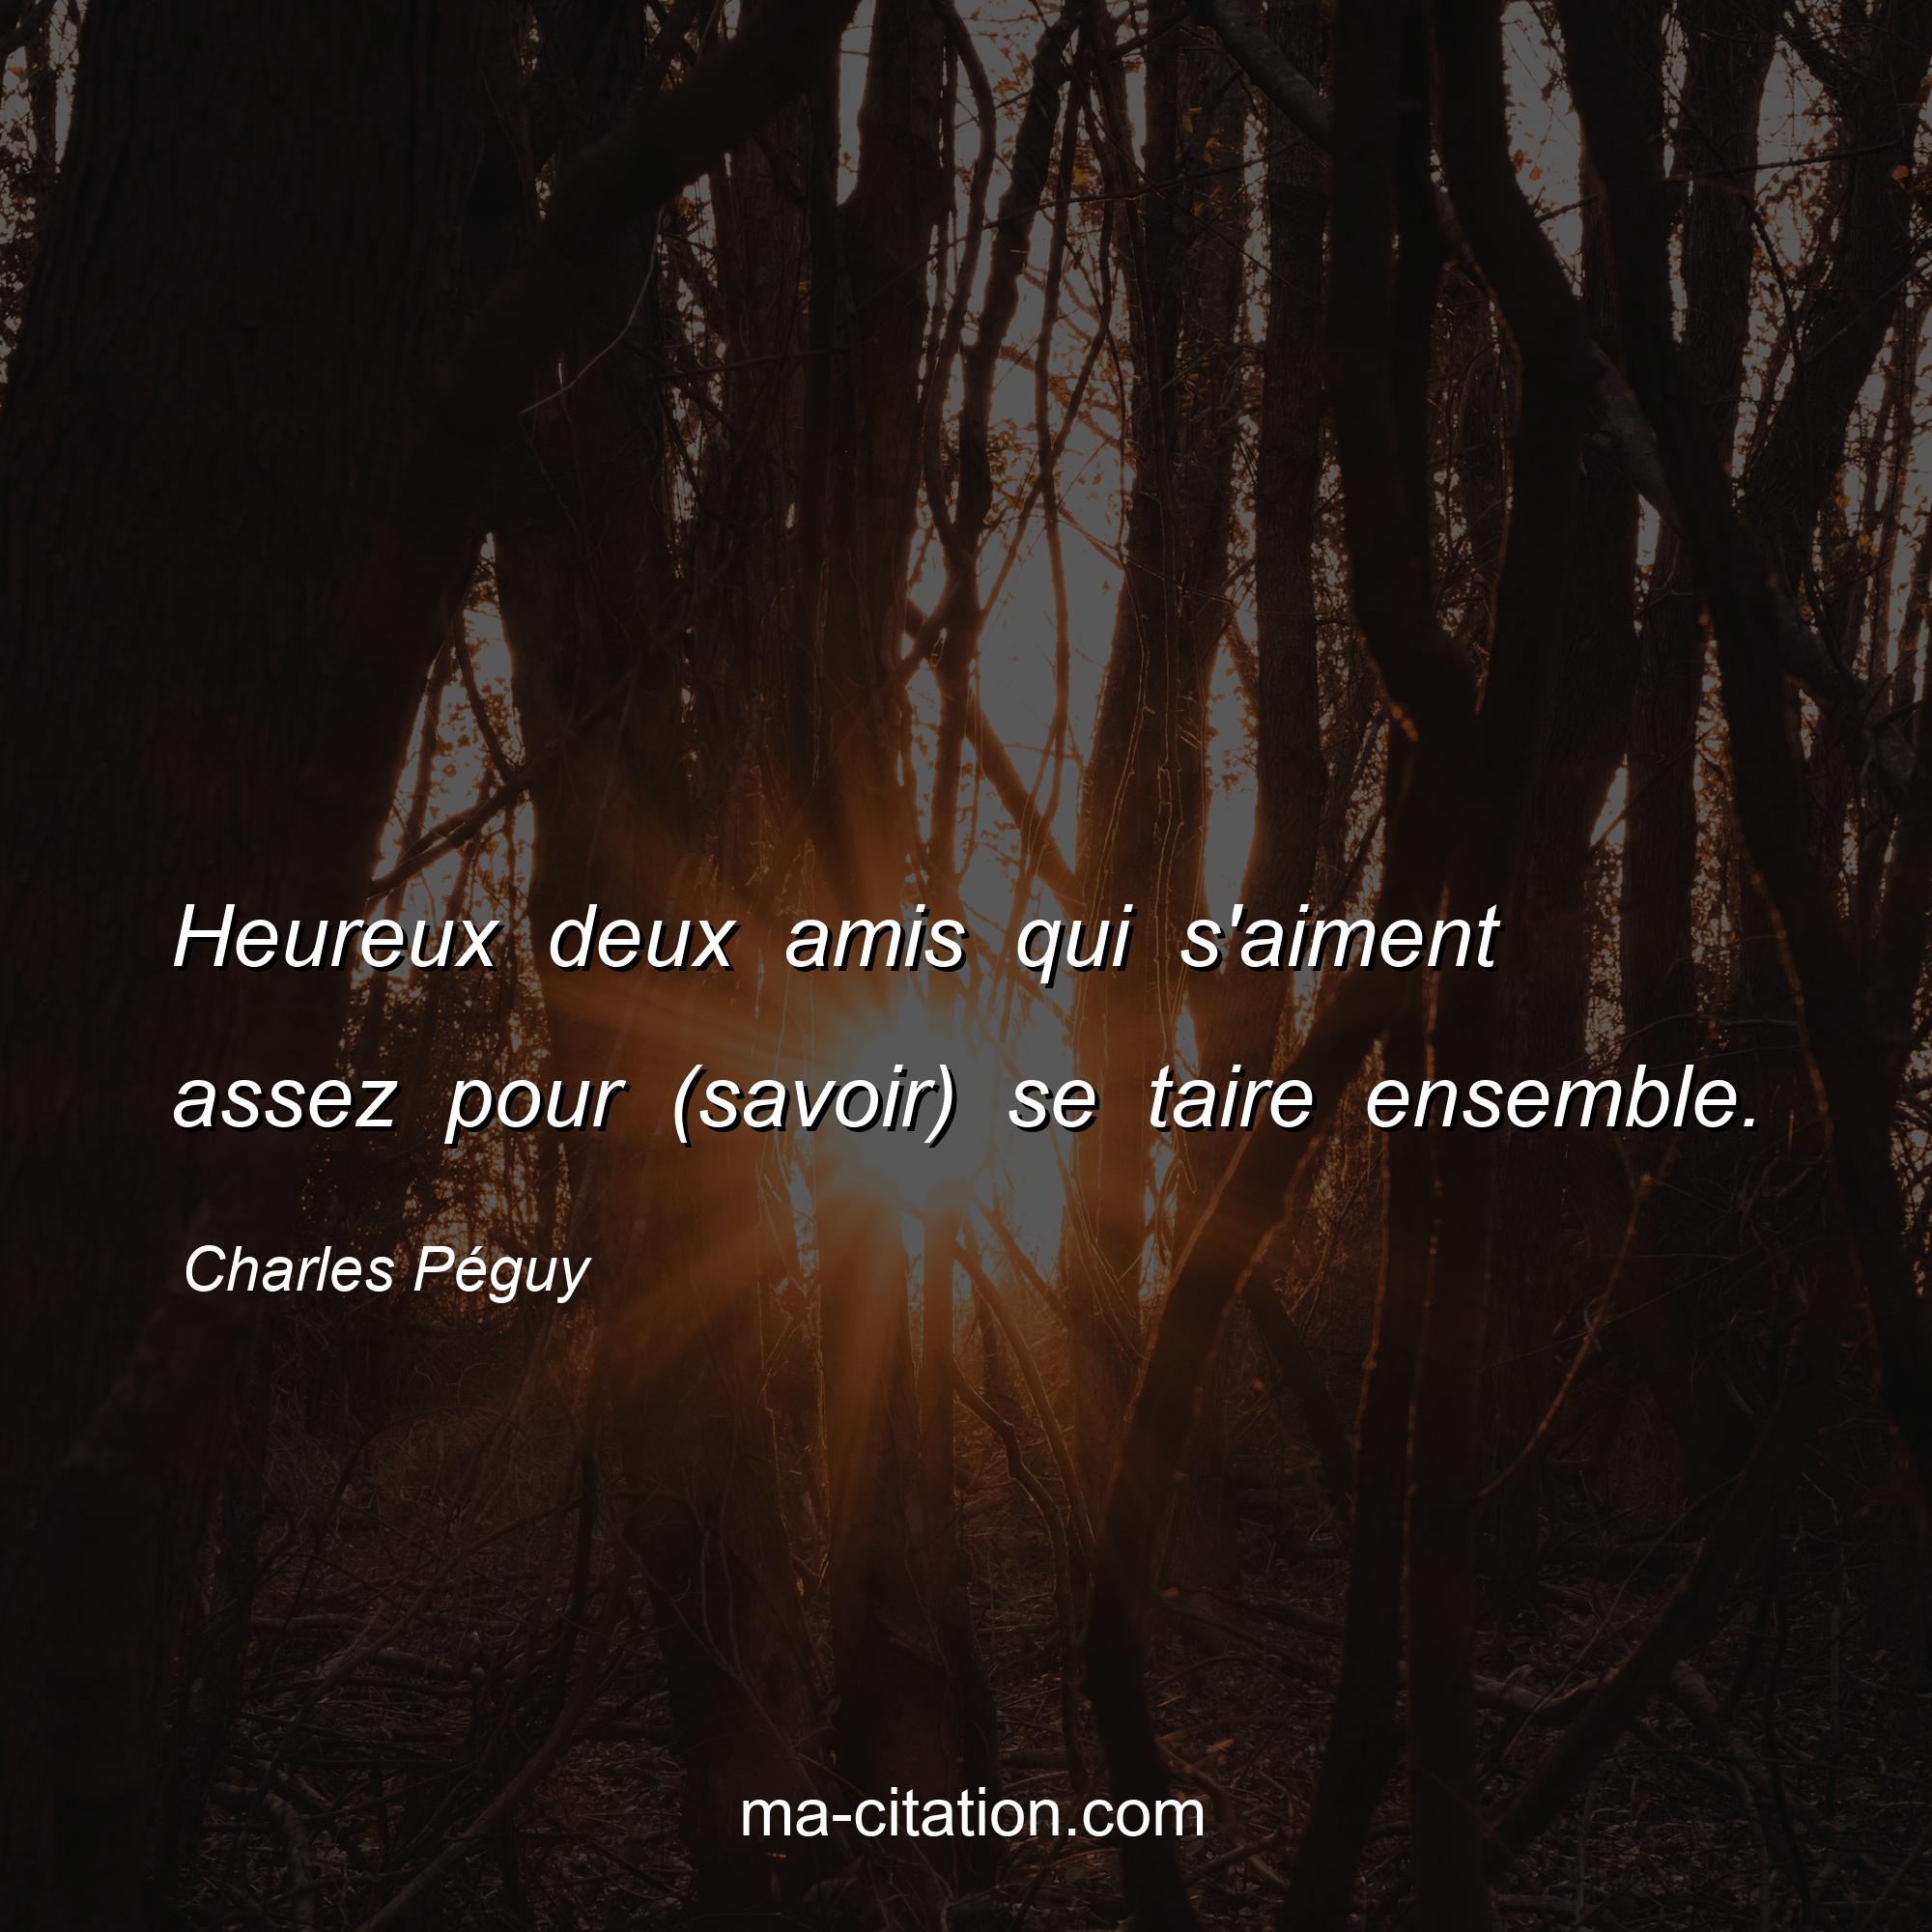 Charles Péguy : Heureux deux amis qui s'aiment assez pour (savoir) se taire ensemble.